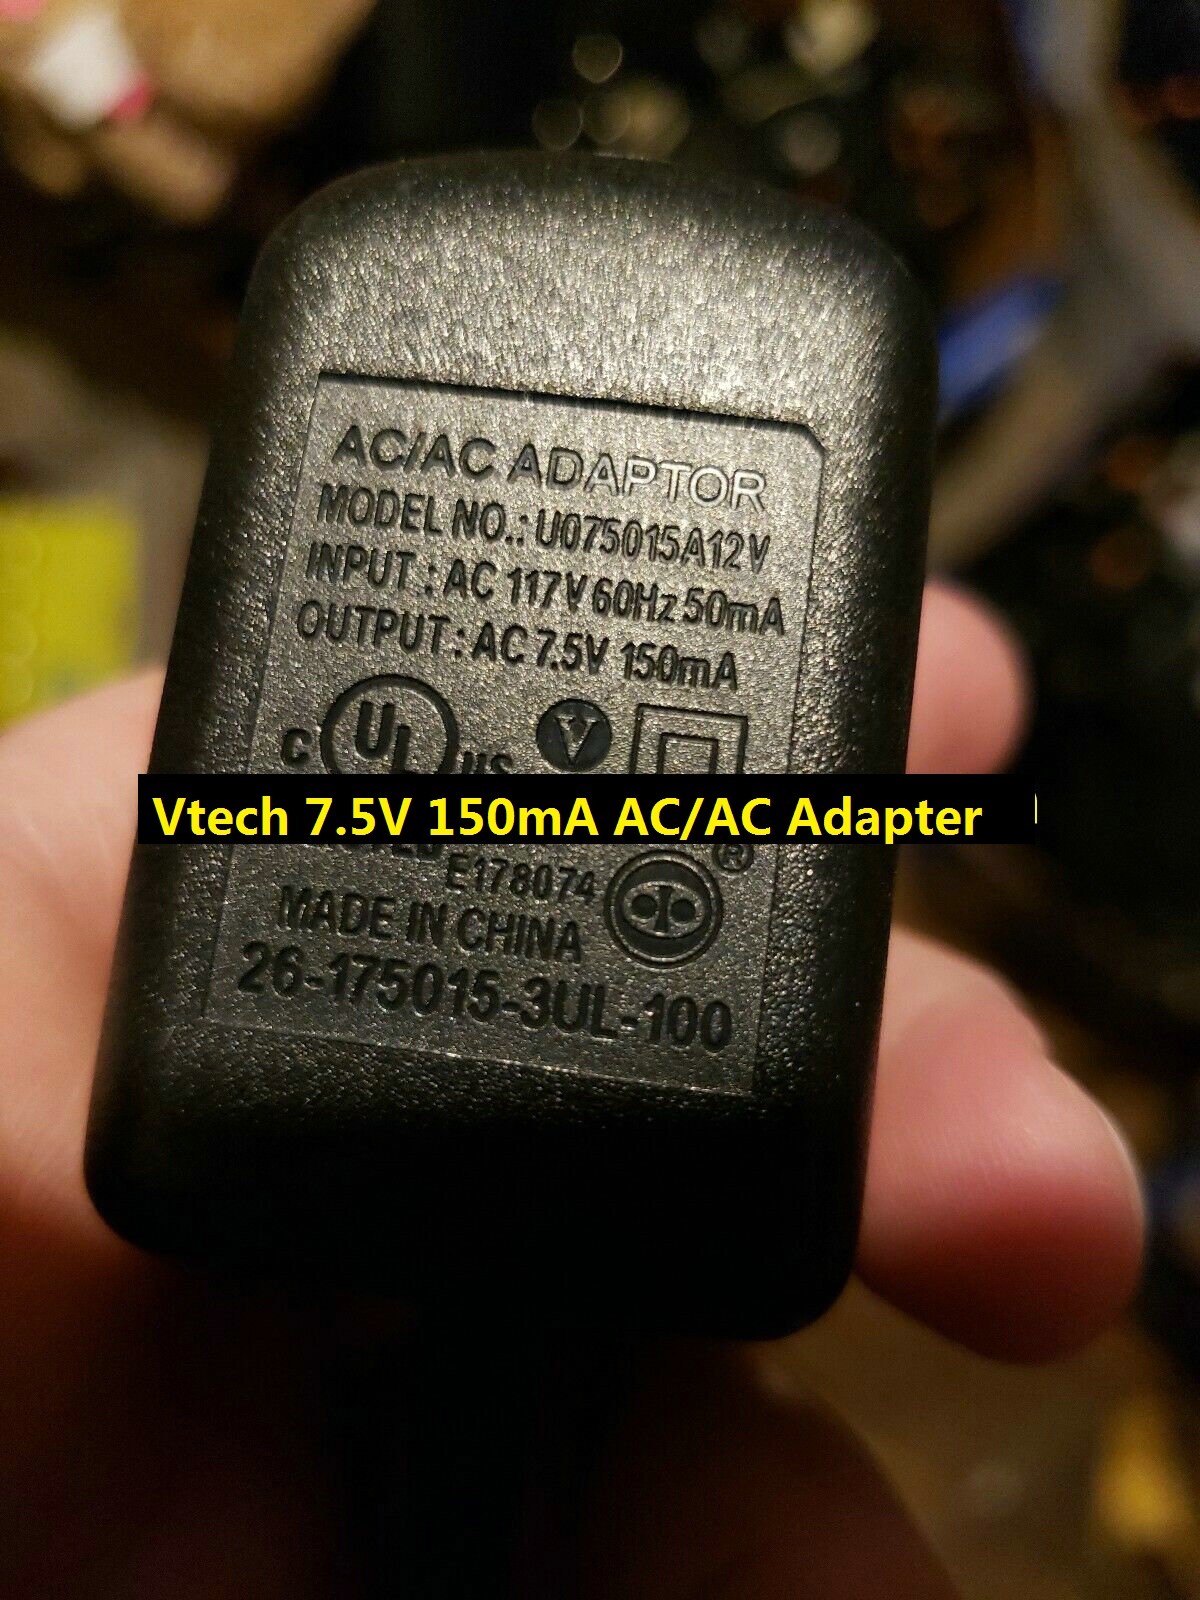 *100% Brand NEW* Vtech & AT&T Model U075015A12V 7.5V 150mA AC/AC Adapter